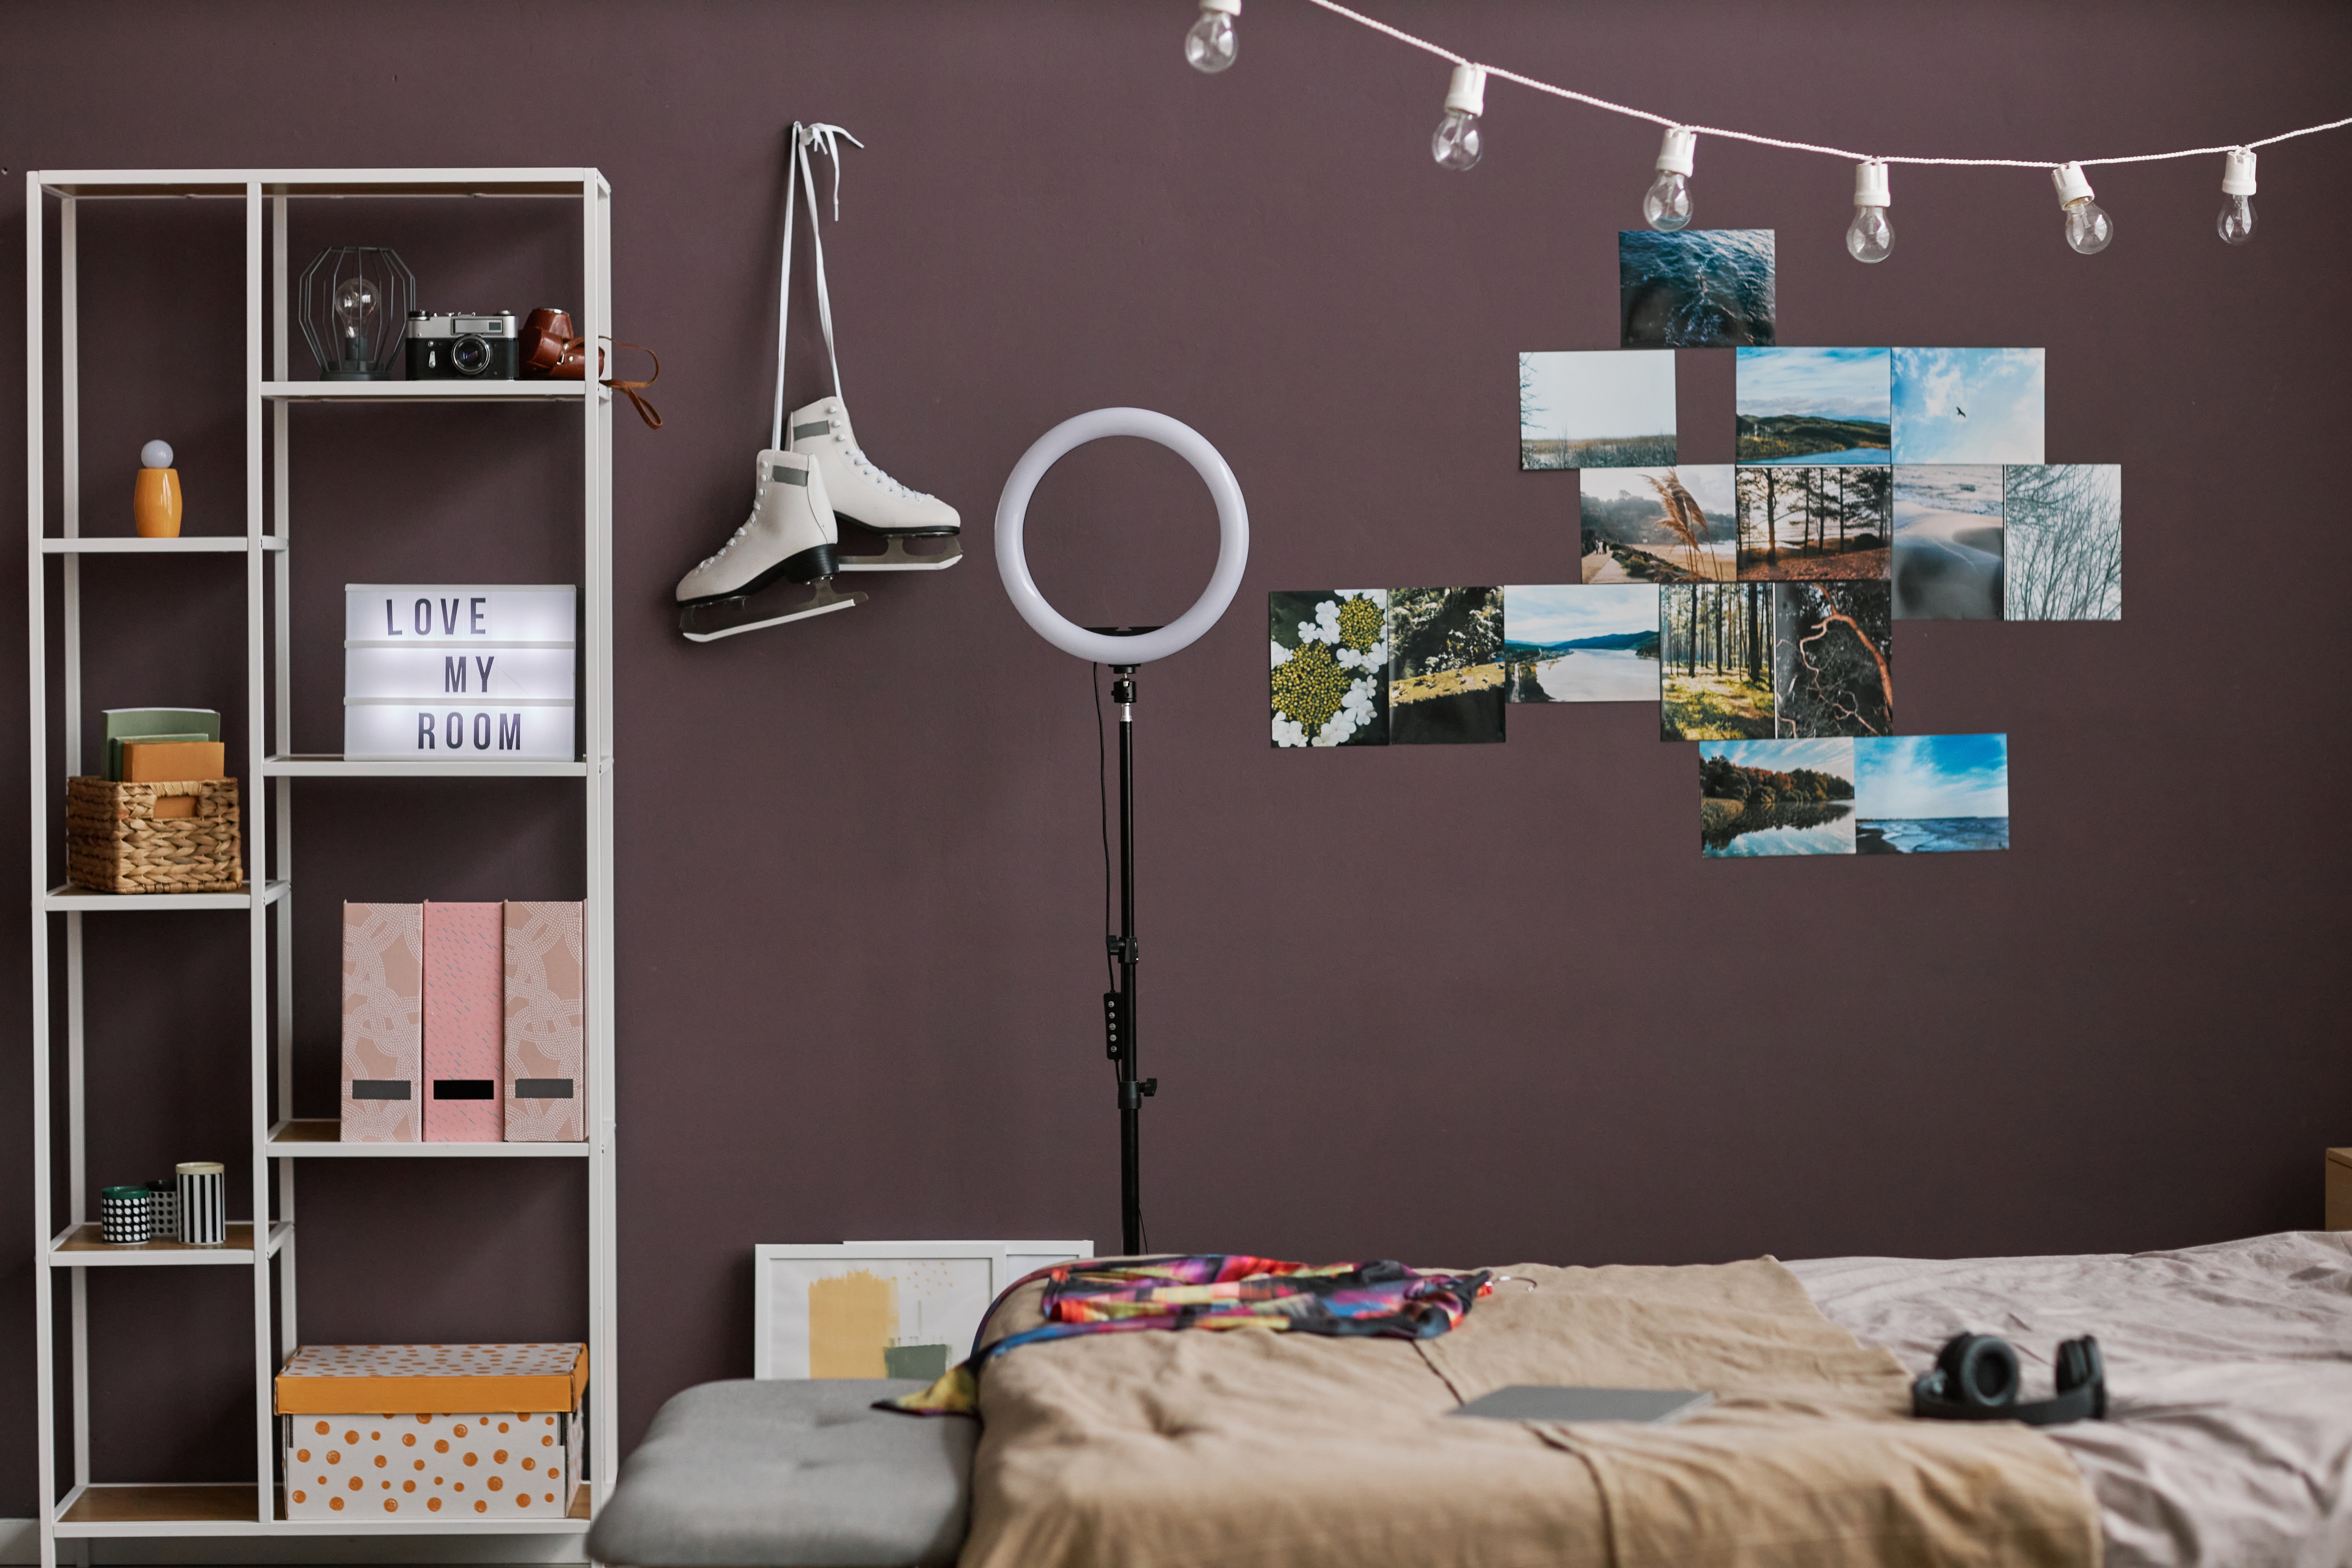 Habitación de adolescente | Fuente: Shutterstock